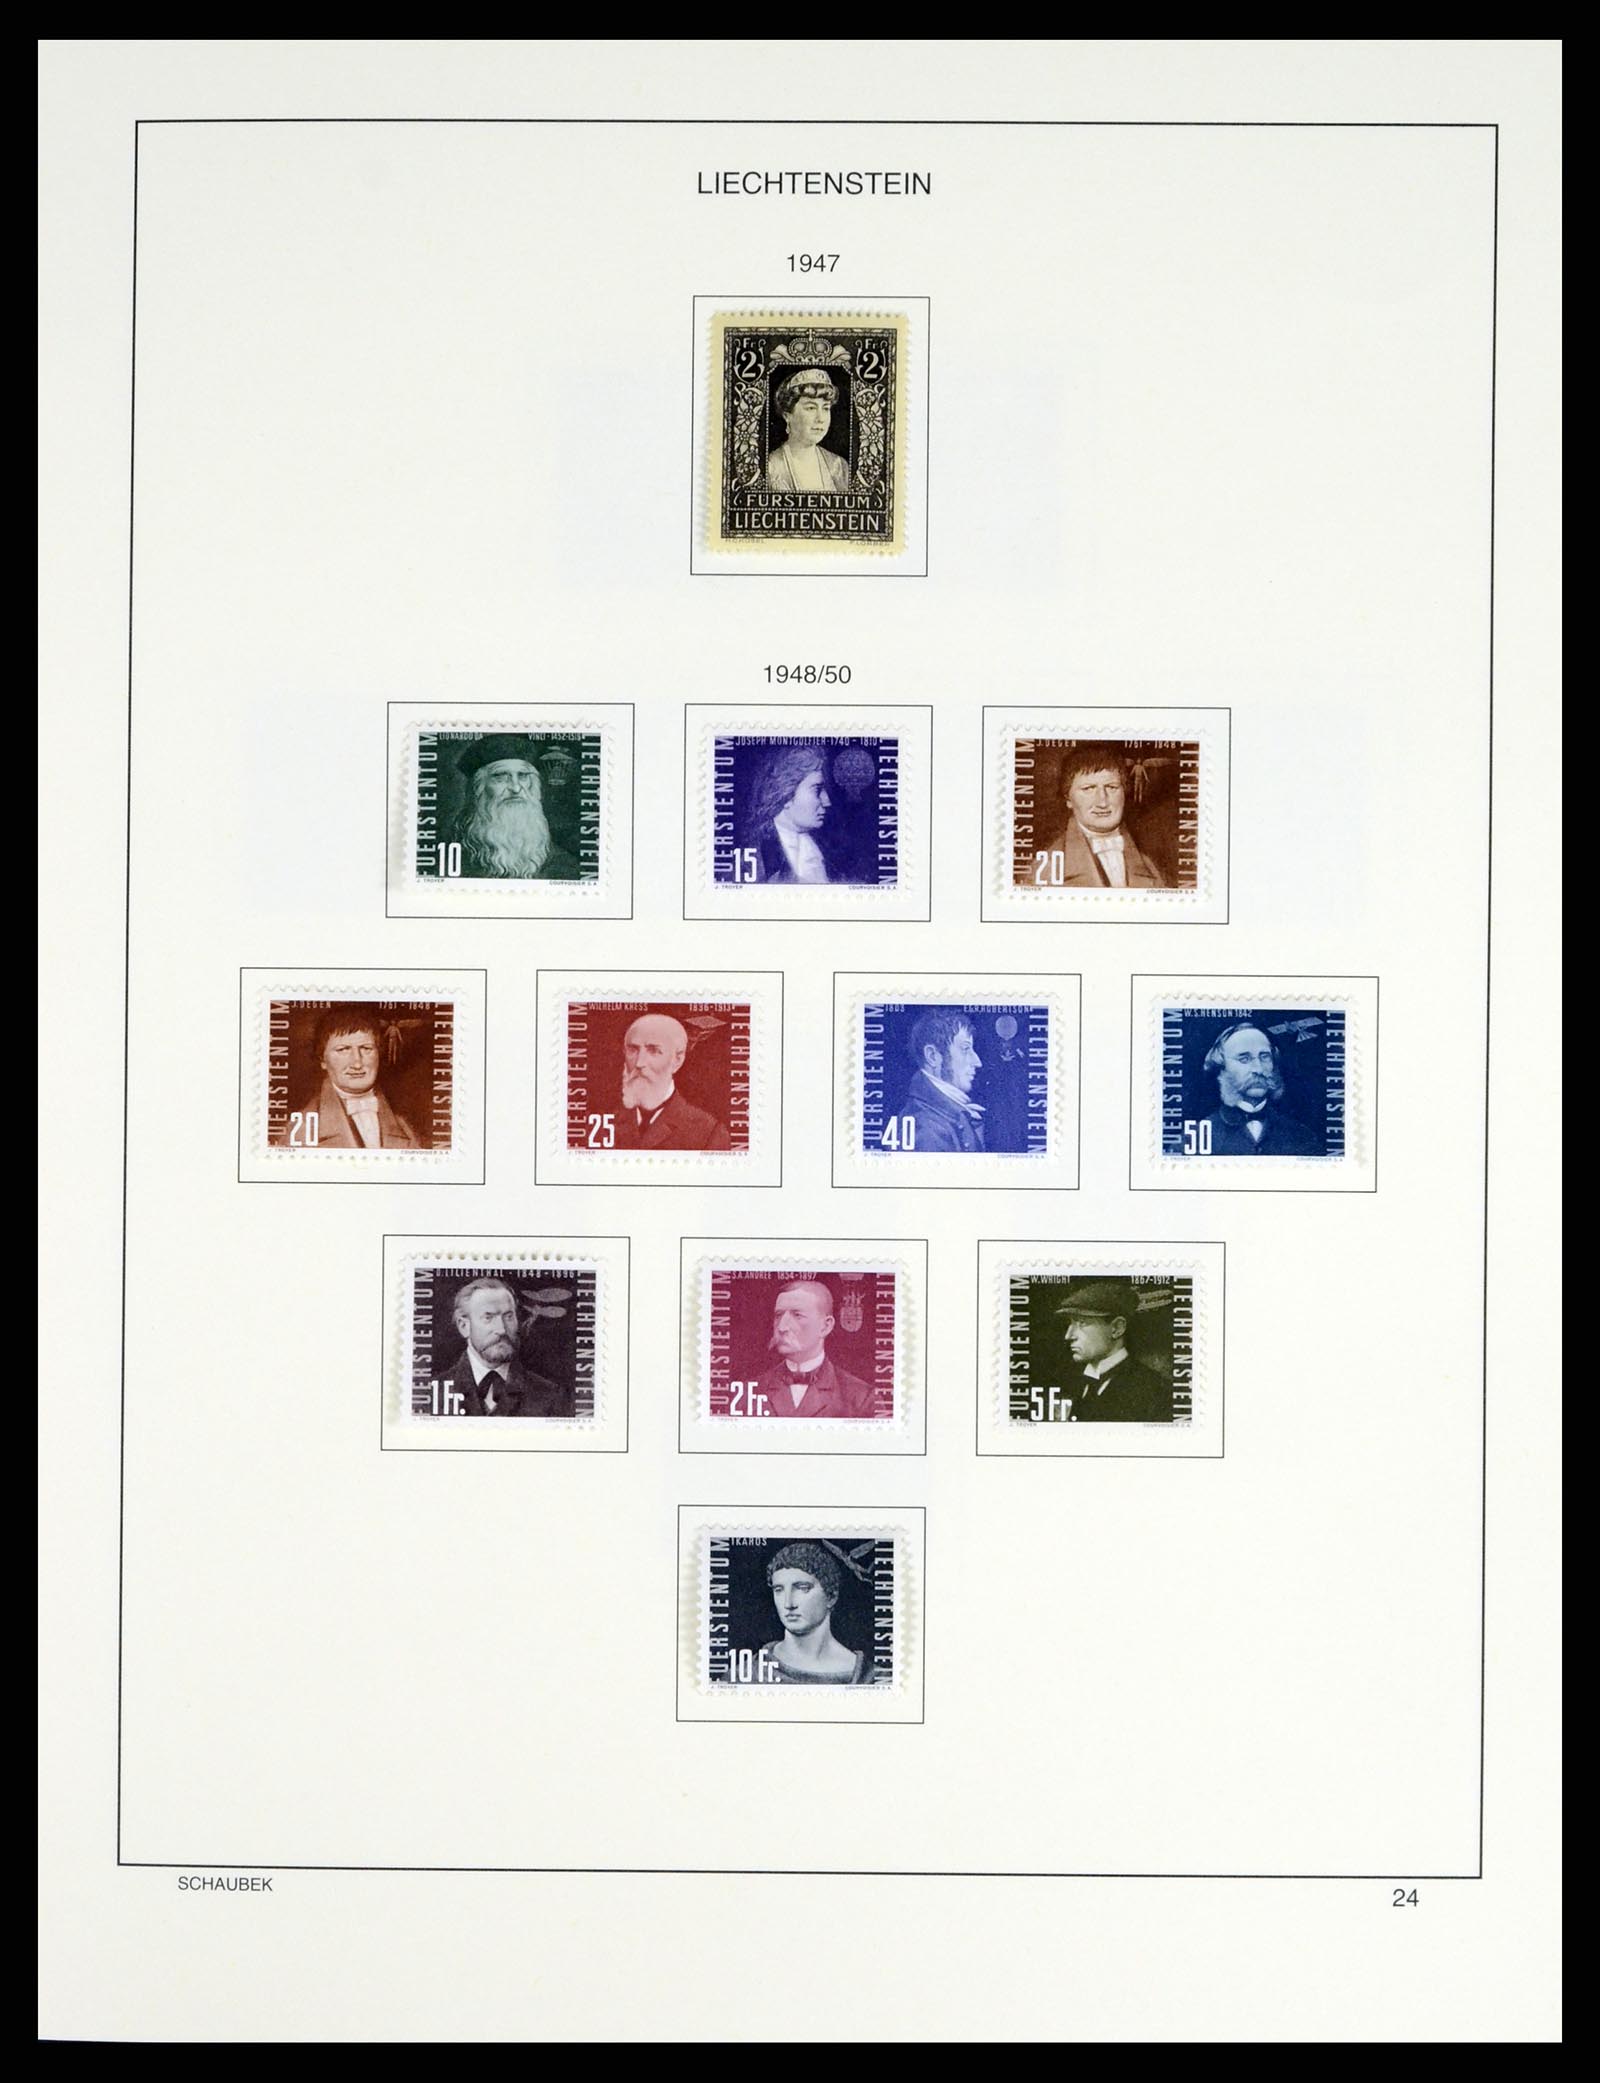 37547 028 - Stamp collection 37547 Liechtenstein 1912-2011.